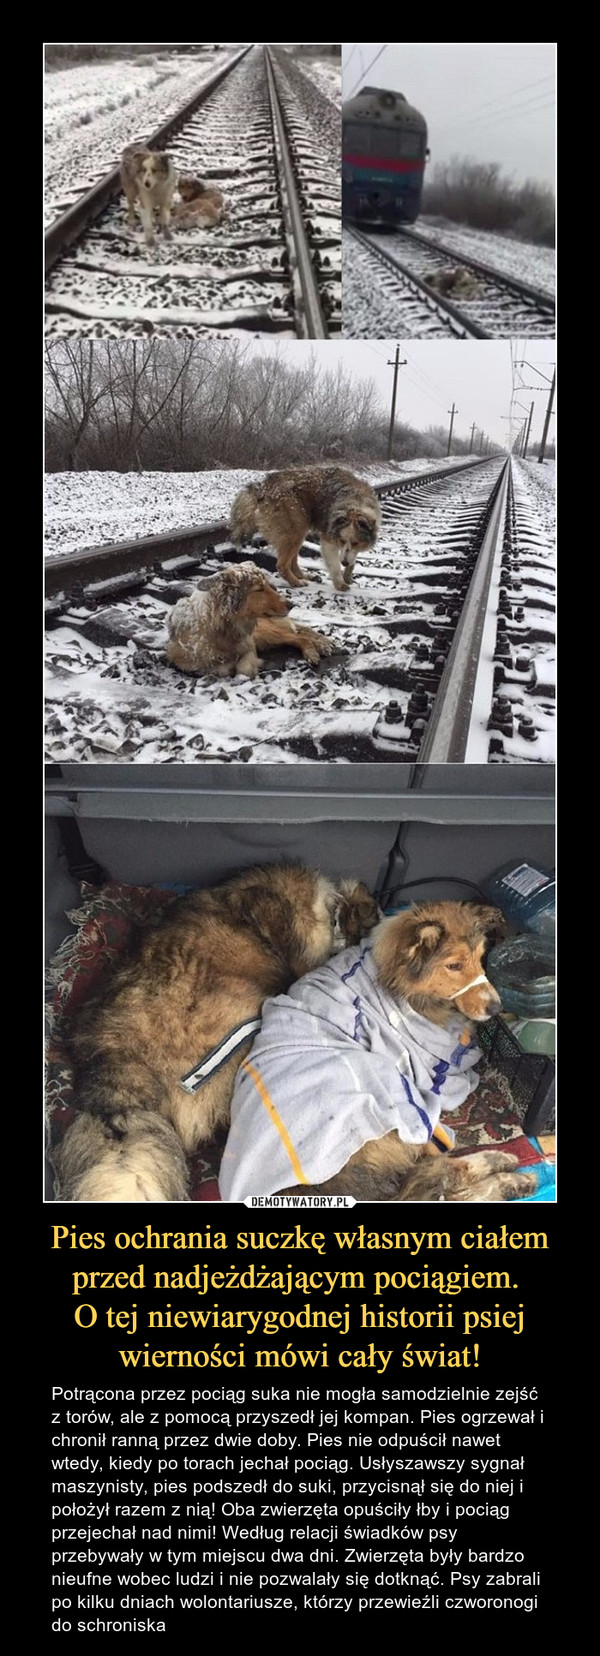 Pies ochrania suczkę własnym ciałem przed nadjeżdżającym pociągiem. 
O tej niewiarygodnej historii psiej wierności mówi cały świat!